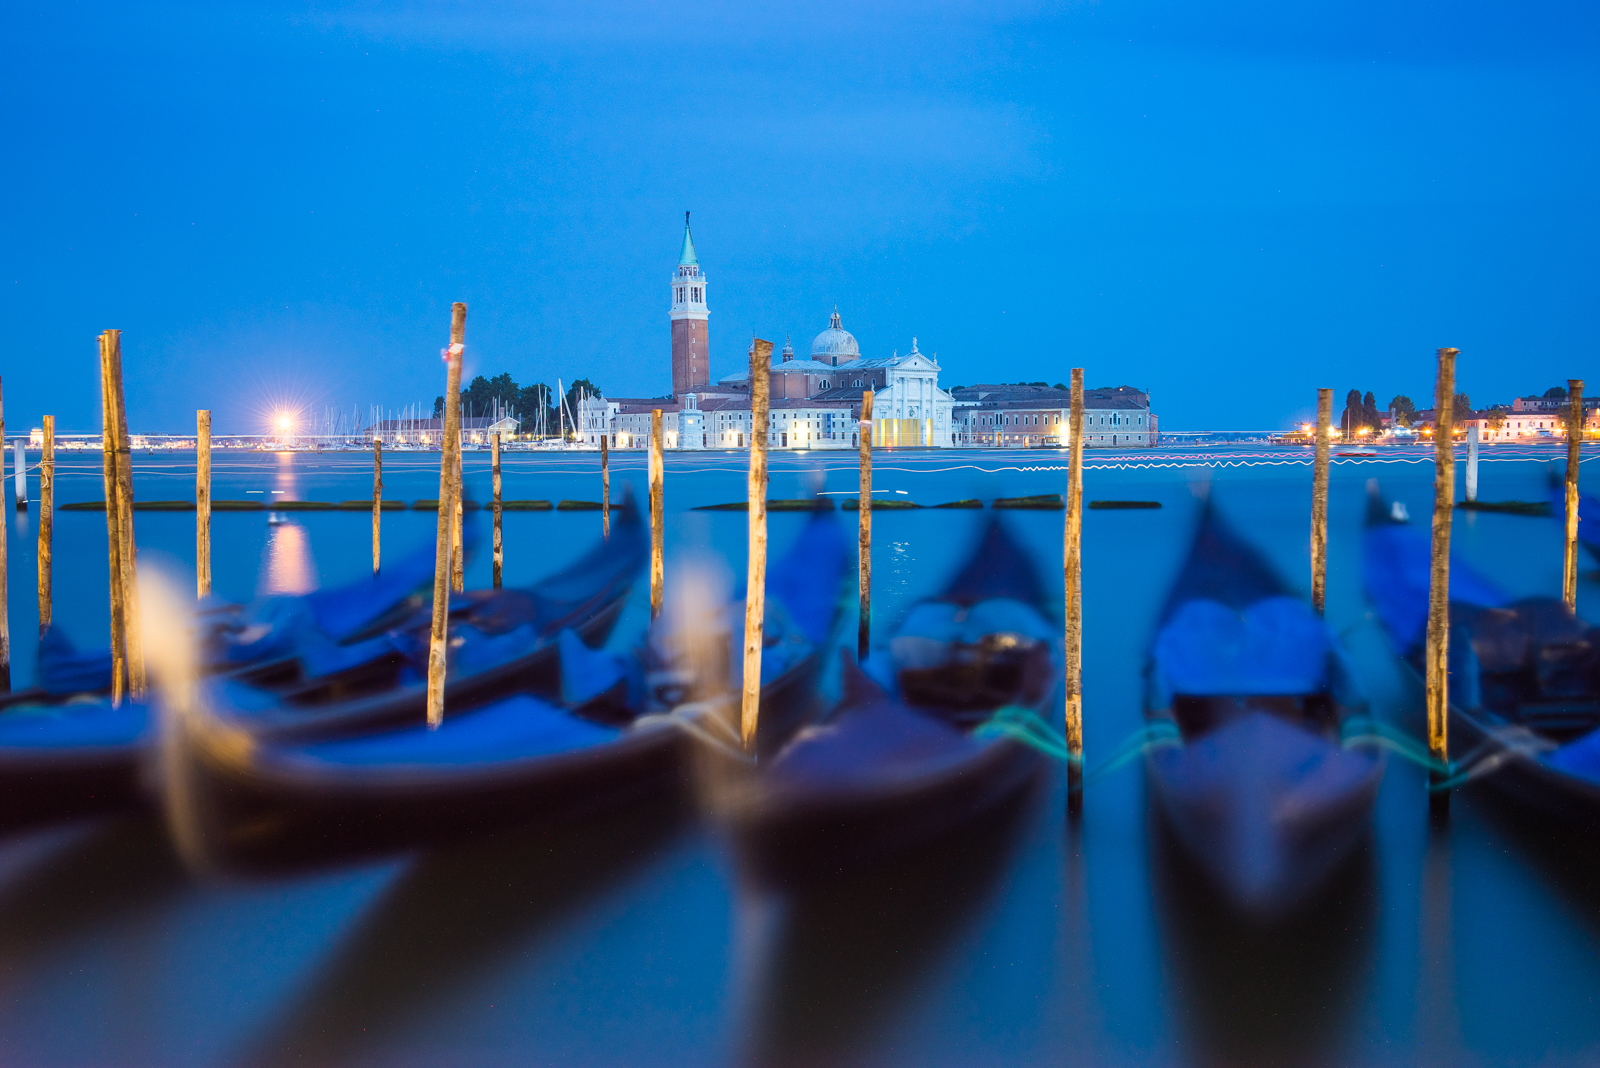 Gondolas | Venice, Italy